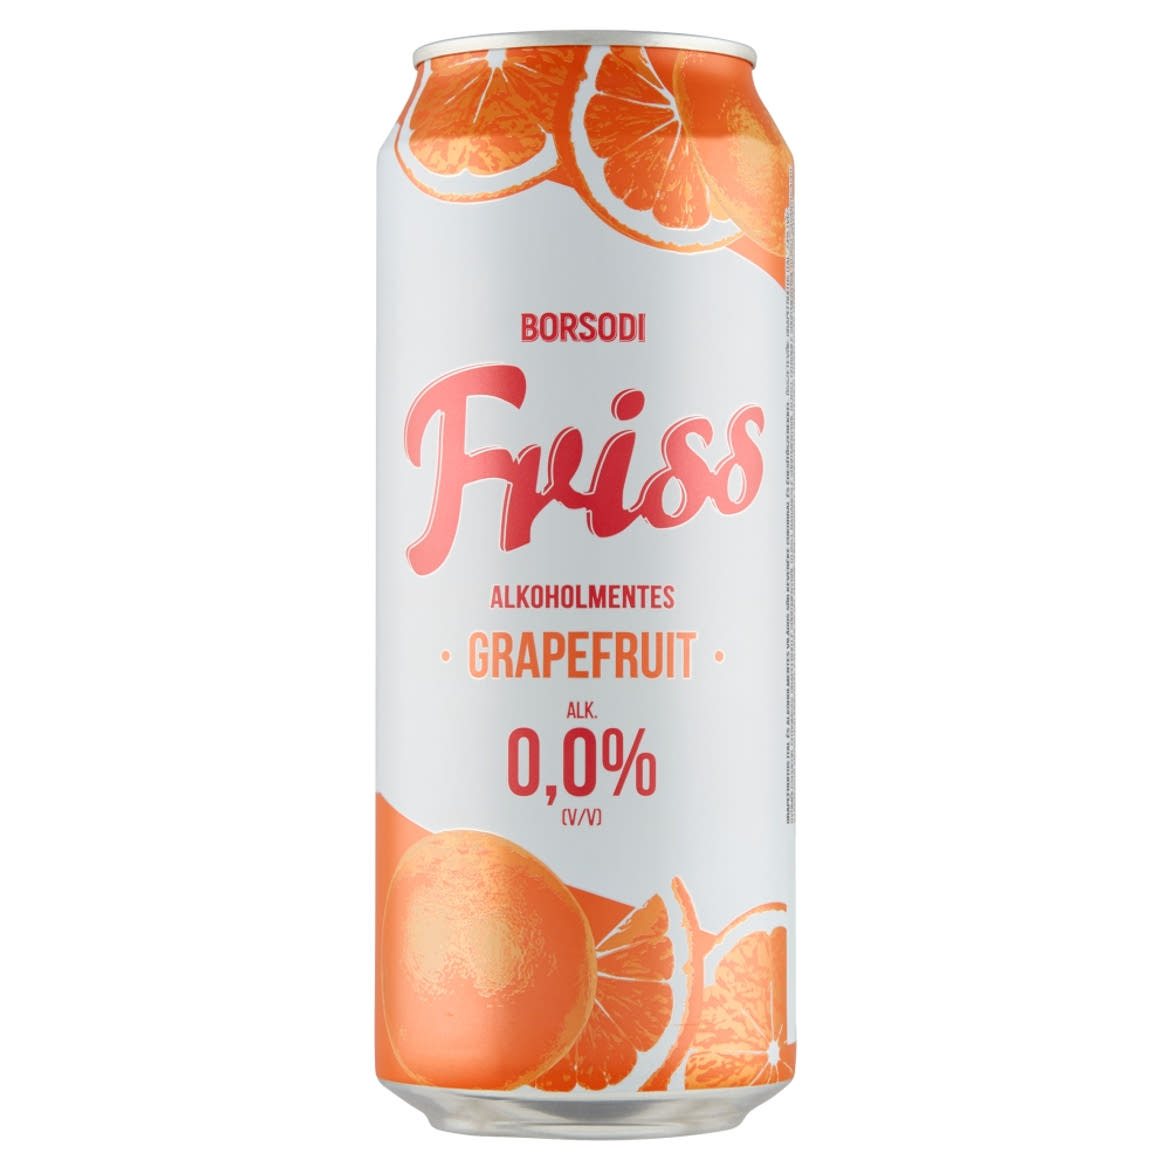 Borsodi Friss grapefruitos ital és alkoholmentes világos sör keveréke